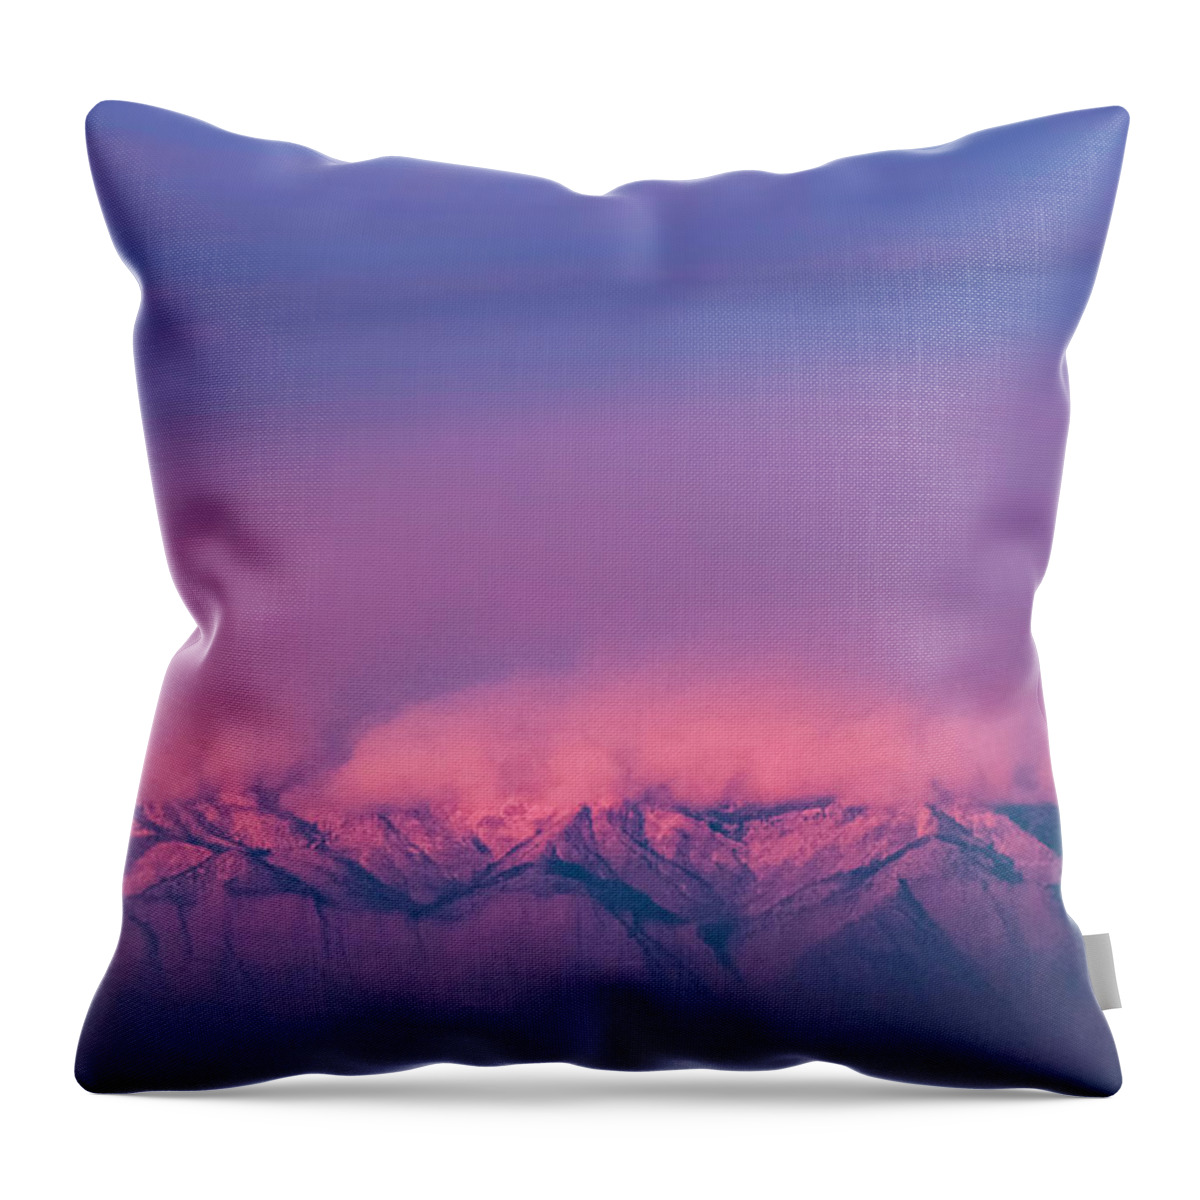 Utah Throw Pillow featuring the photograph Winter Light by Robert Fawcett